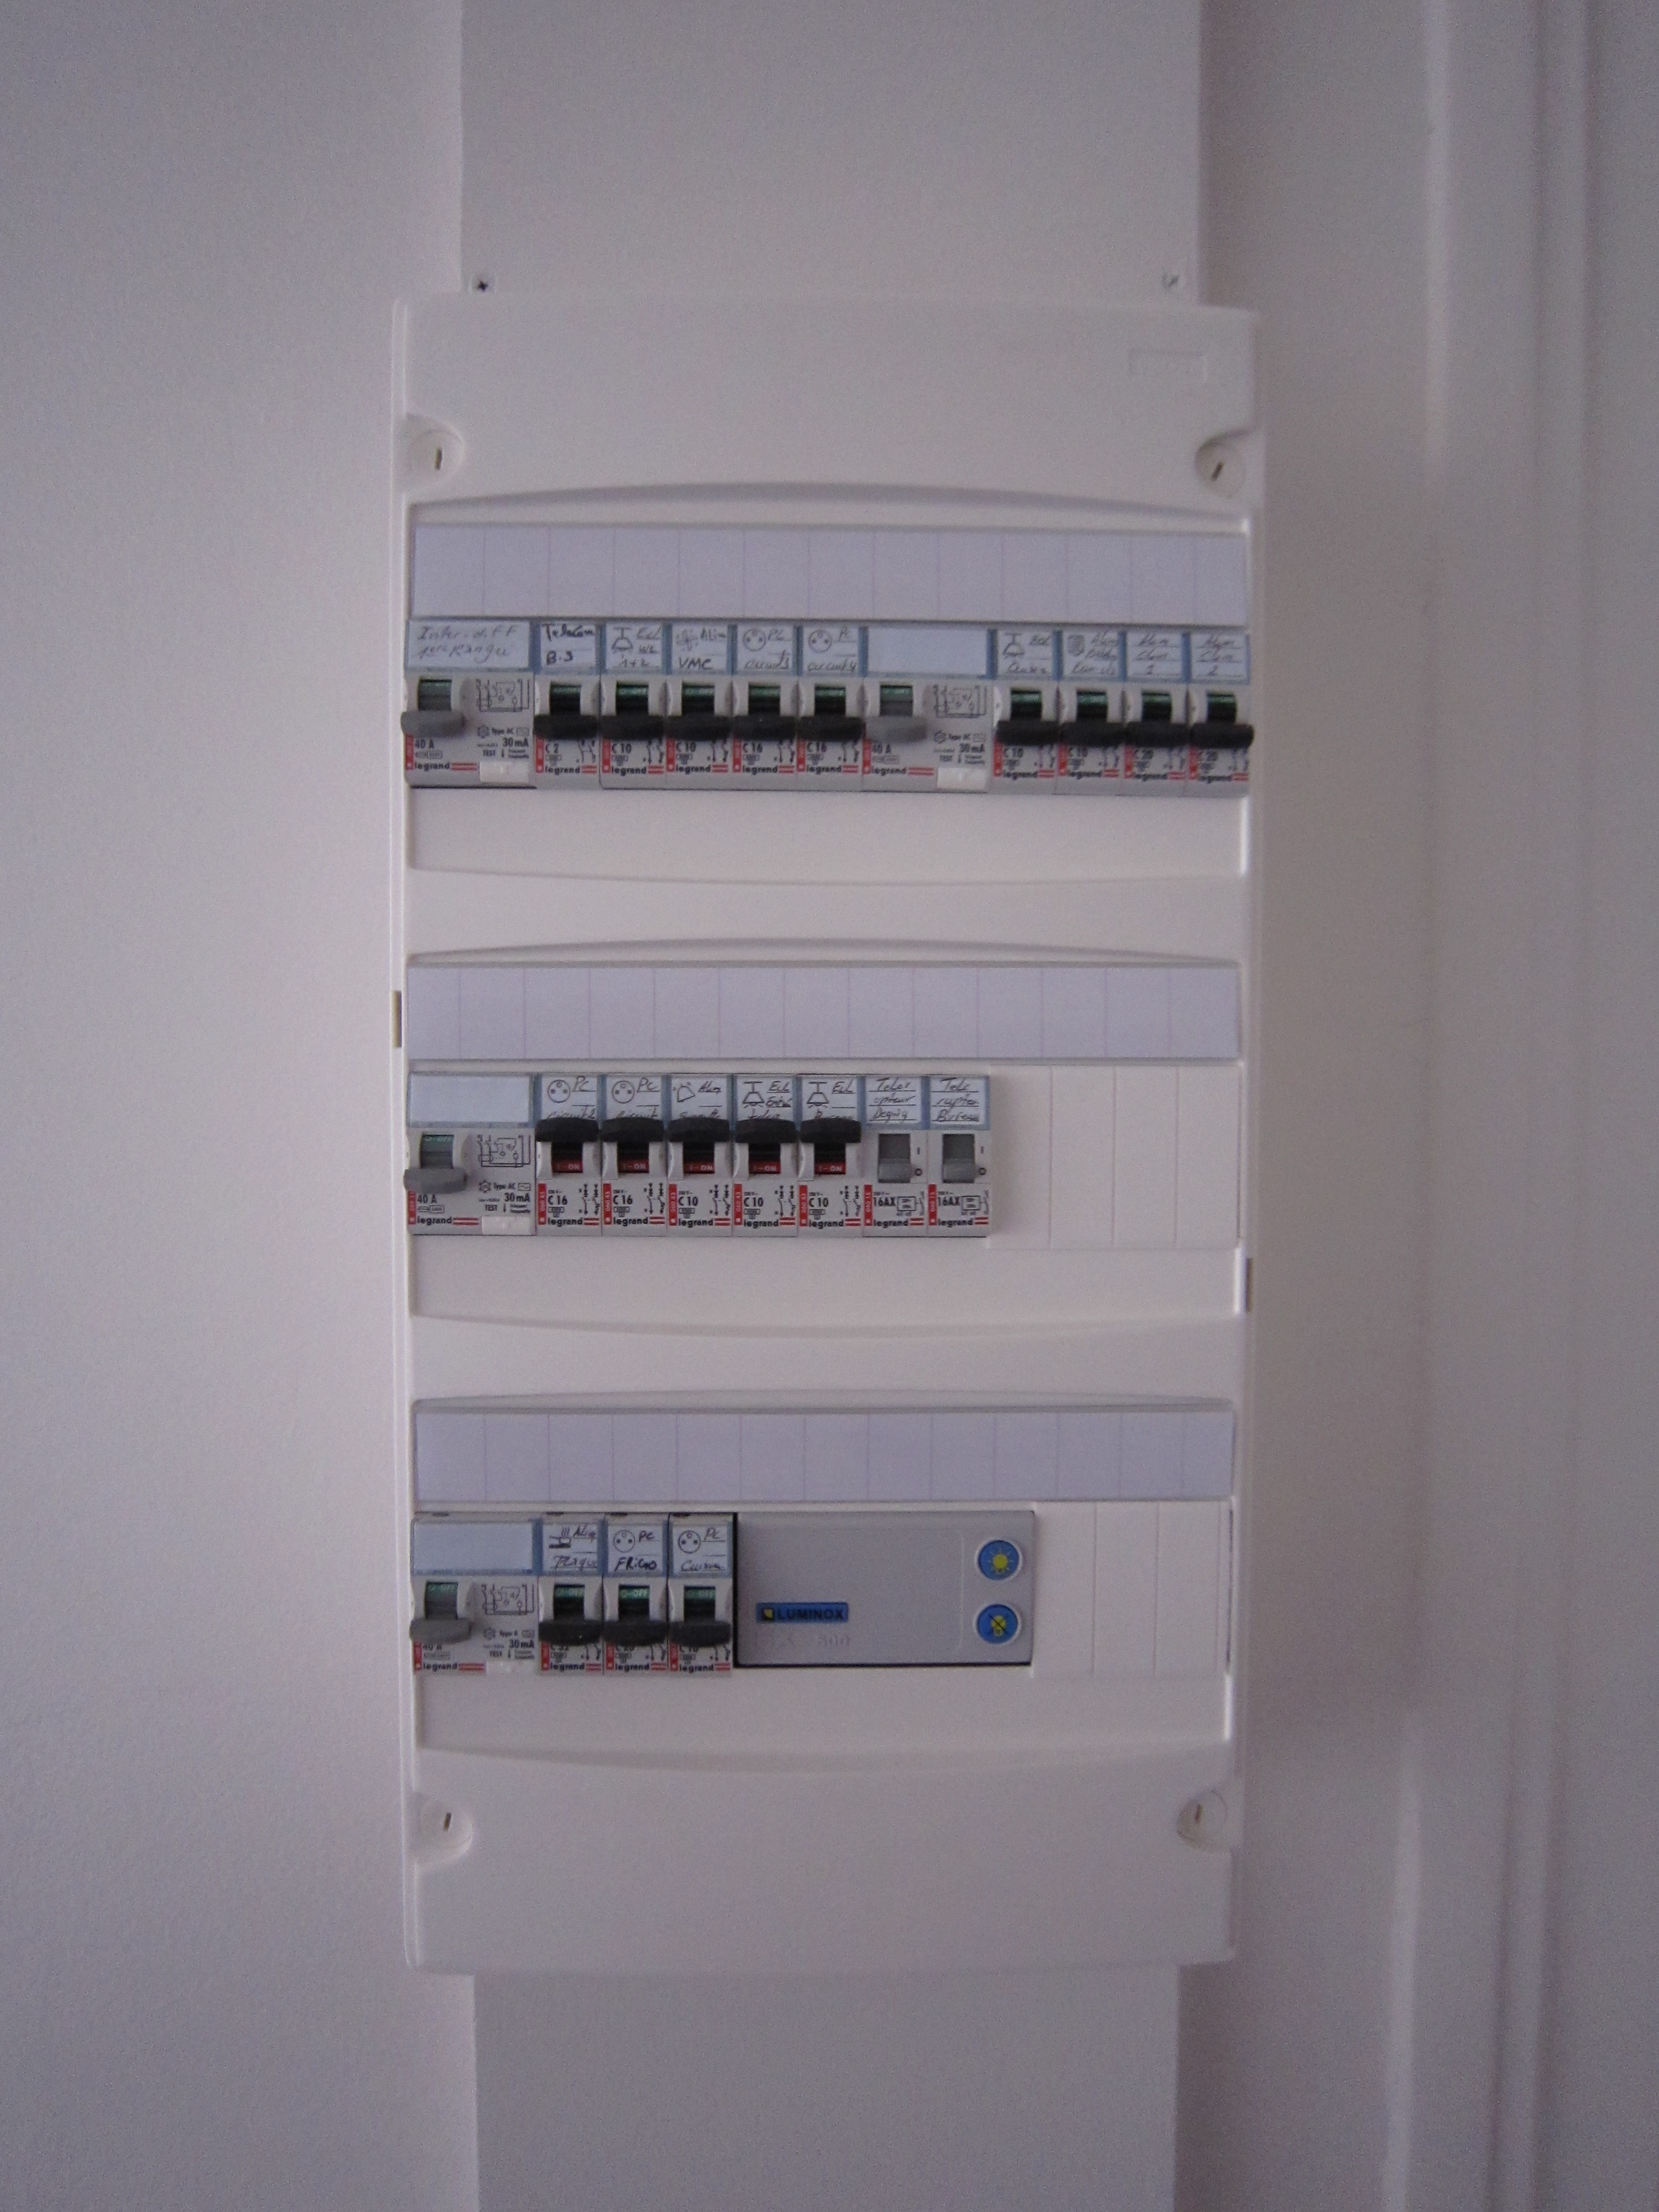 La norme NF C 15-100 réglemente les installations électriques, notamment avec des schémas de tableaux électriques. © Tristan Nitot, CC BY-NC-SA 2.0, Flickr